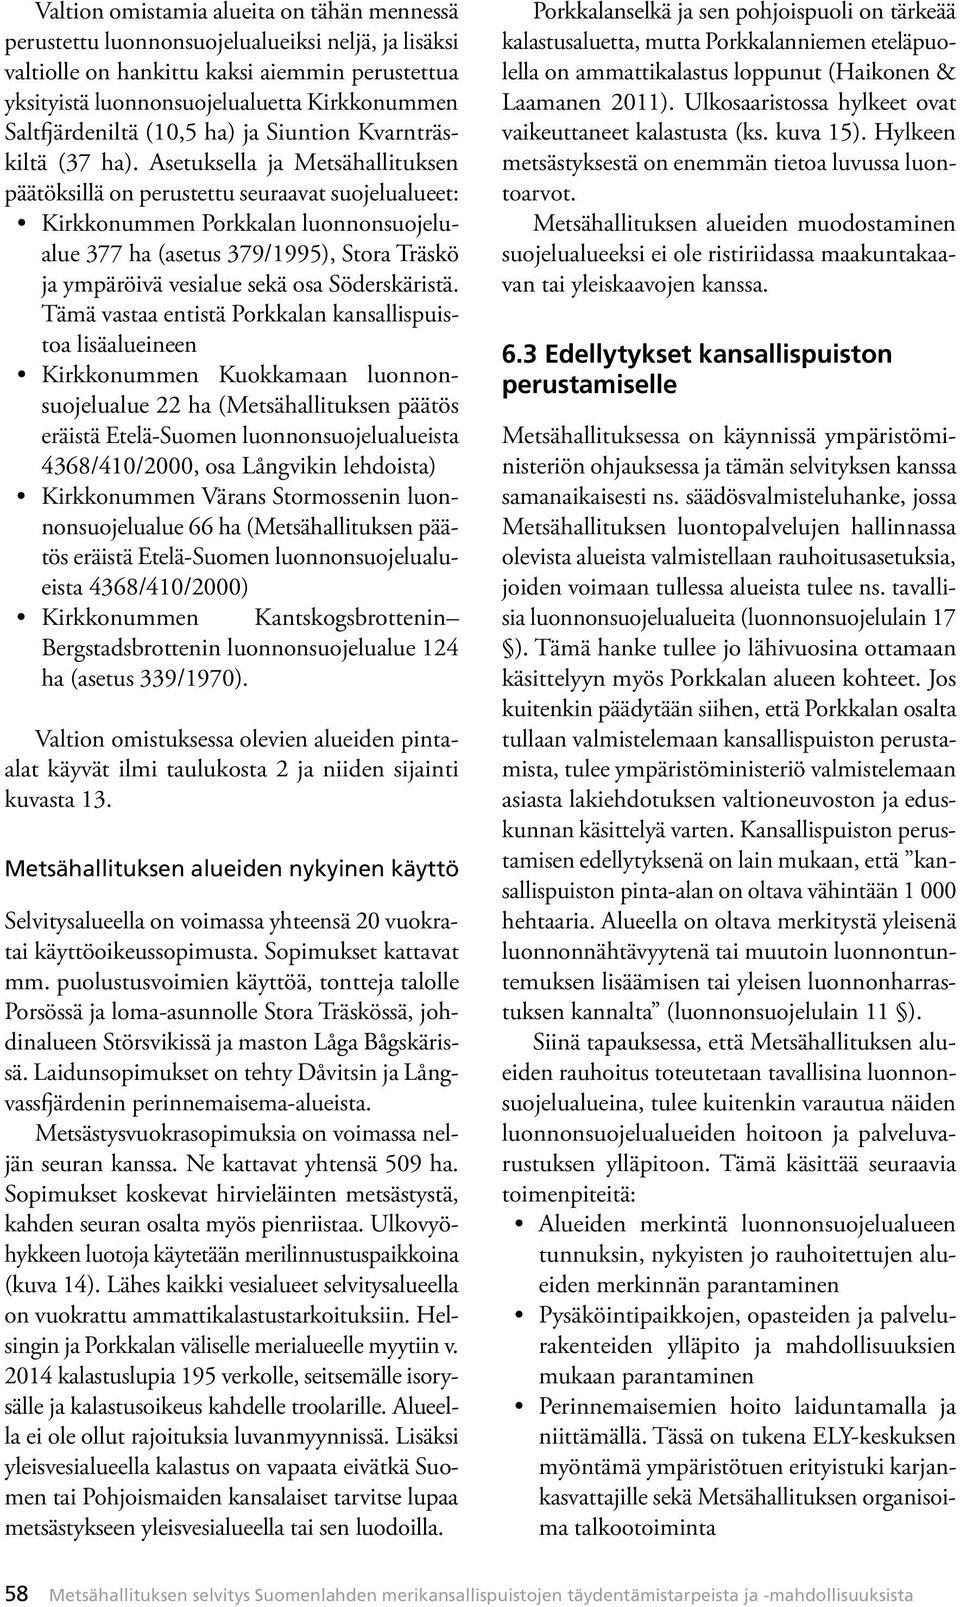 Asetuksella ja Metsähallituksen päätöksillä on perustettu seuraavat suojelualueet: Kirkkonummen Porkkalan luonnonsuojelualue 377 ha (asetus 379/1995), Stora Träskö ja ympäröivä vesialue sekä osa